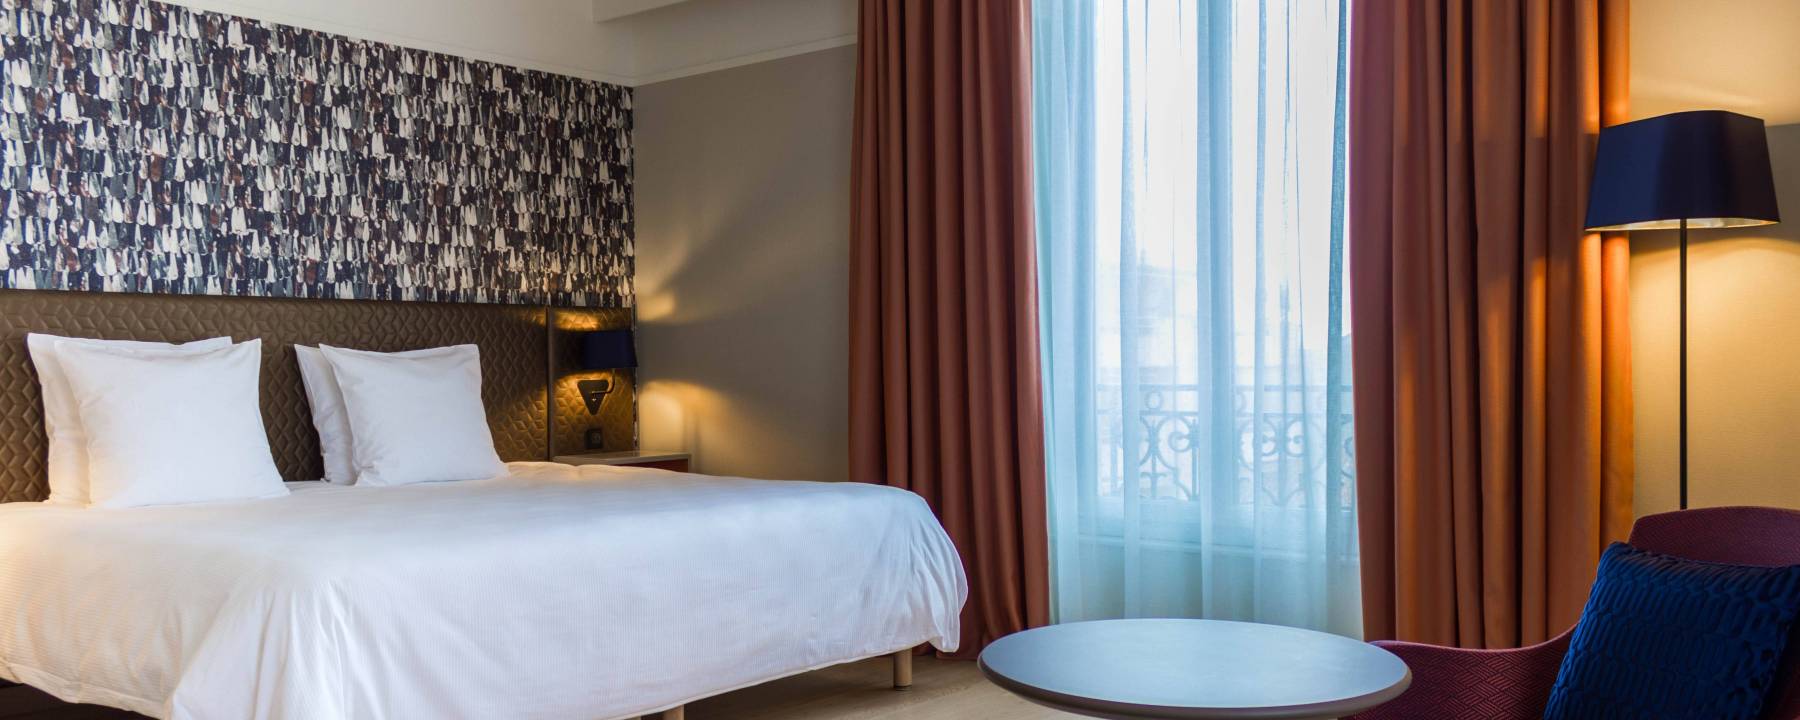 Recrutement: Femme de chambre / Valet de chambre F/H chez Oceania Hotels à Montpellier